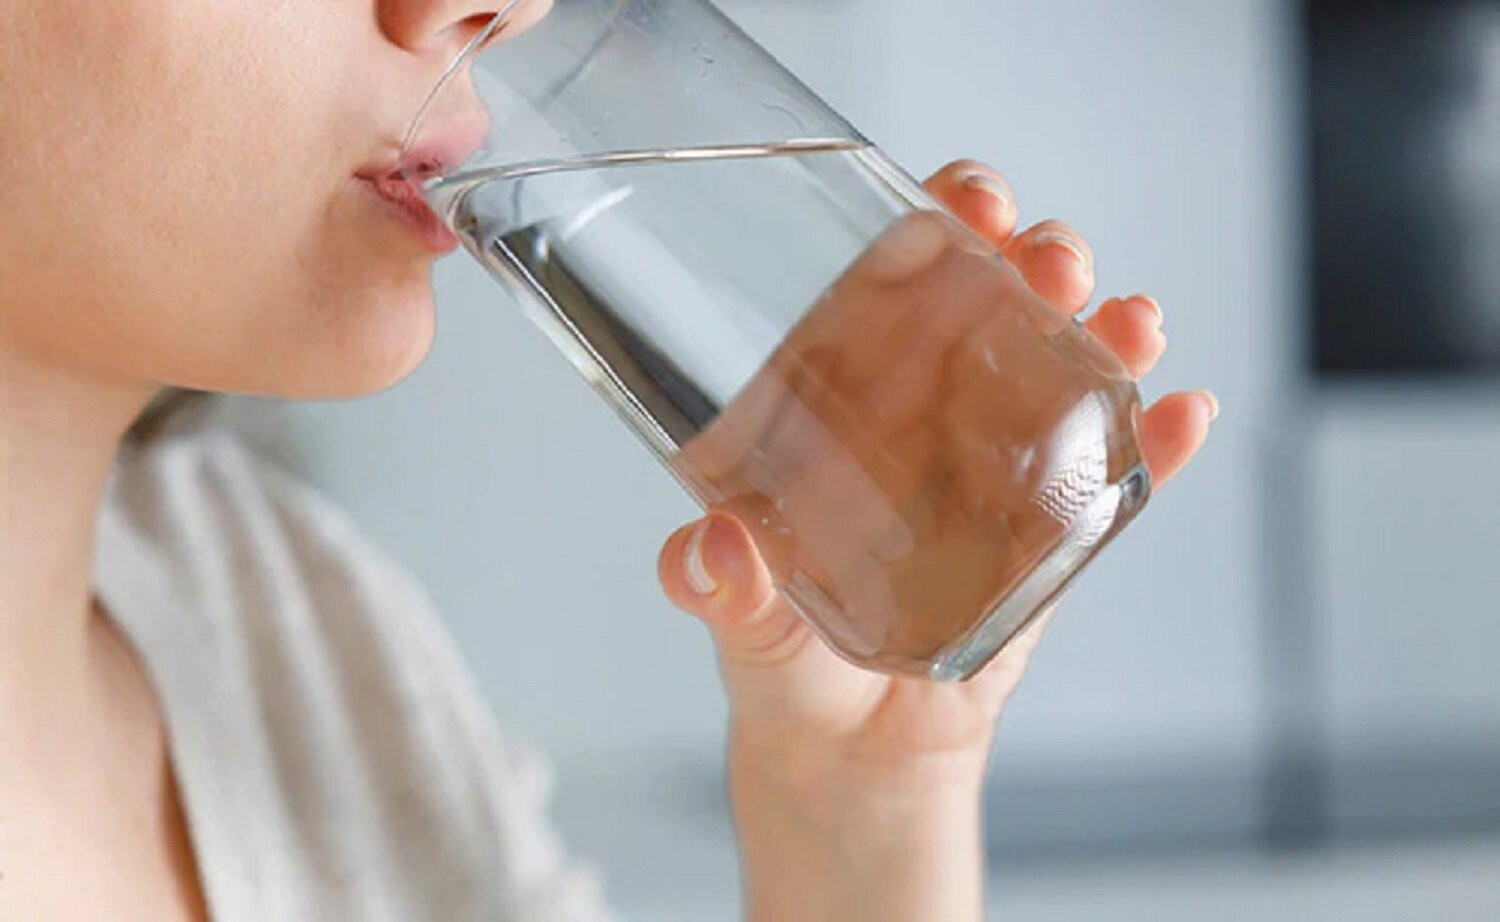 Uống ngay một cốc nước ấm cũng giúp cơ thể bù lại lượng nước đã mất trong khi ngủ. (Ảnh: NDTV)